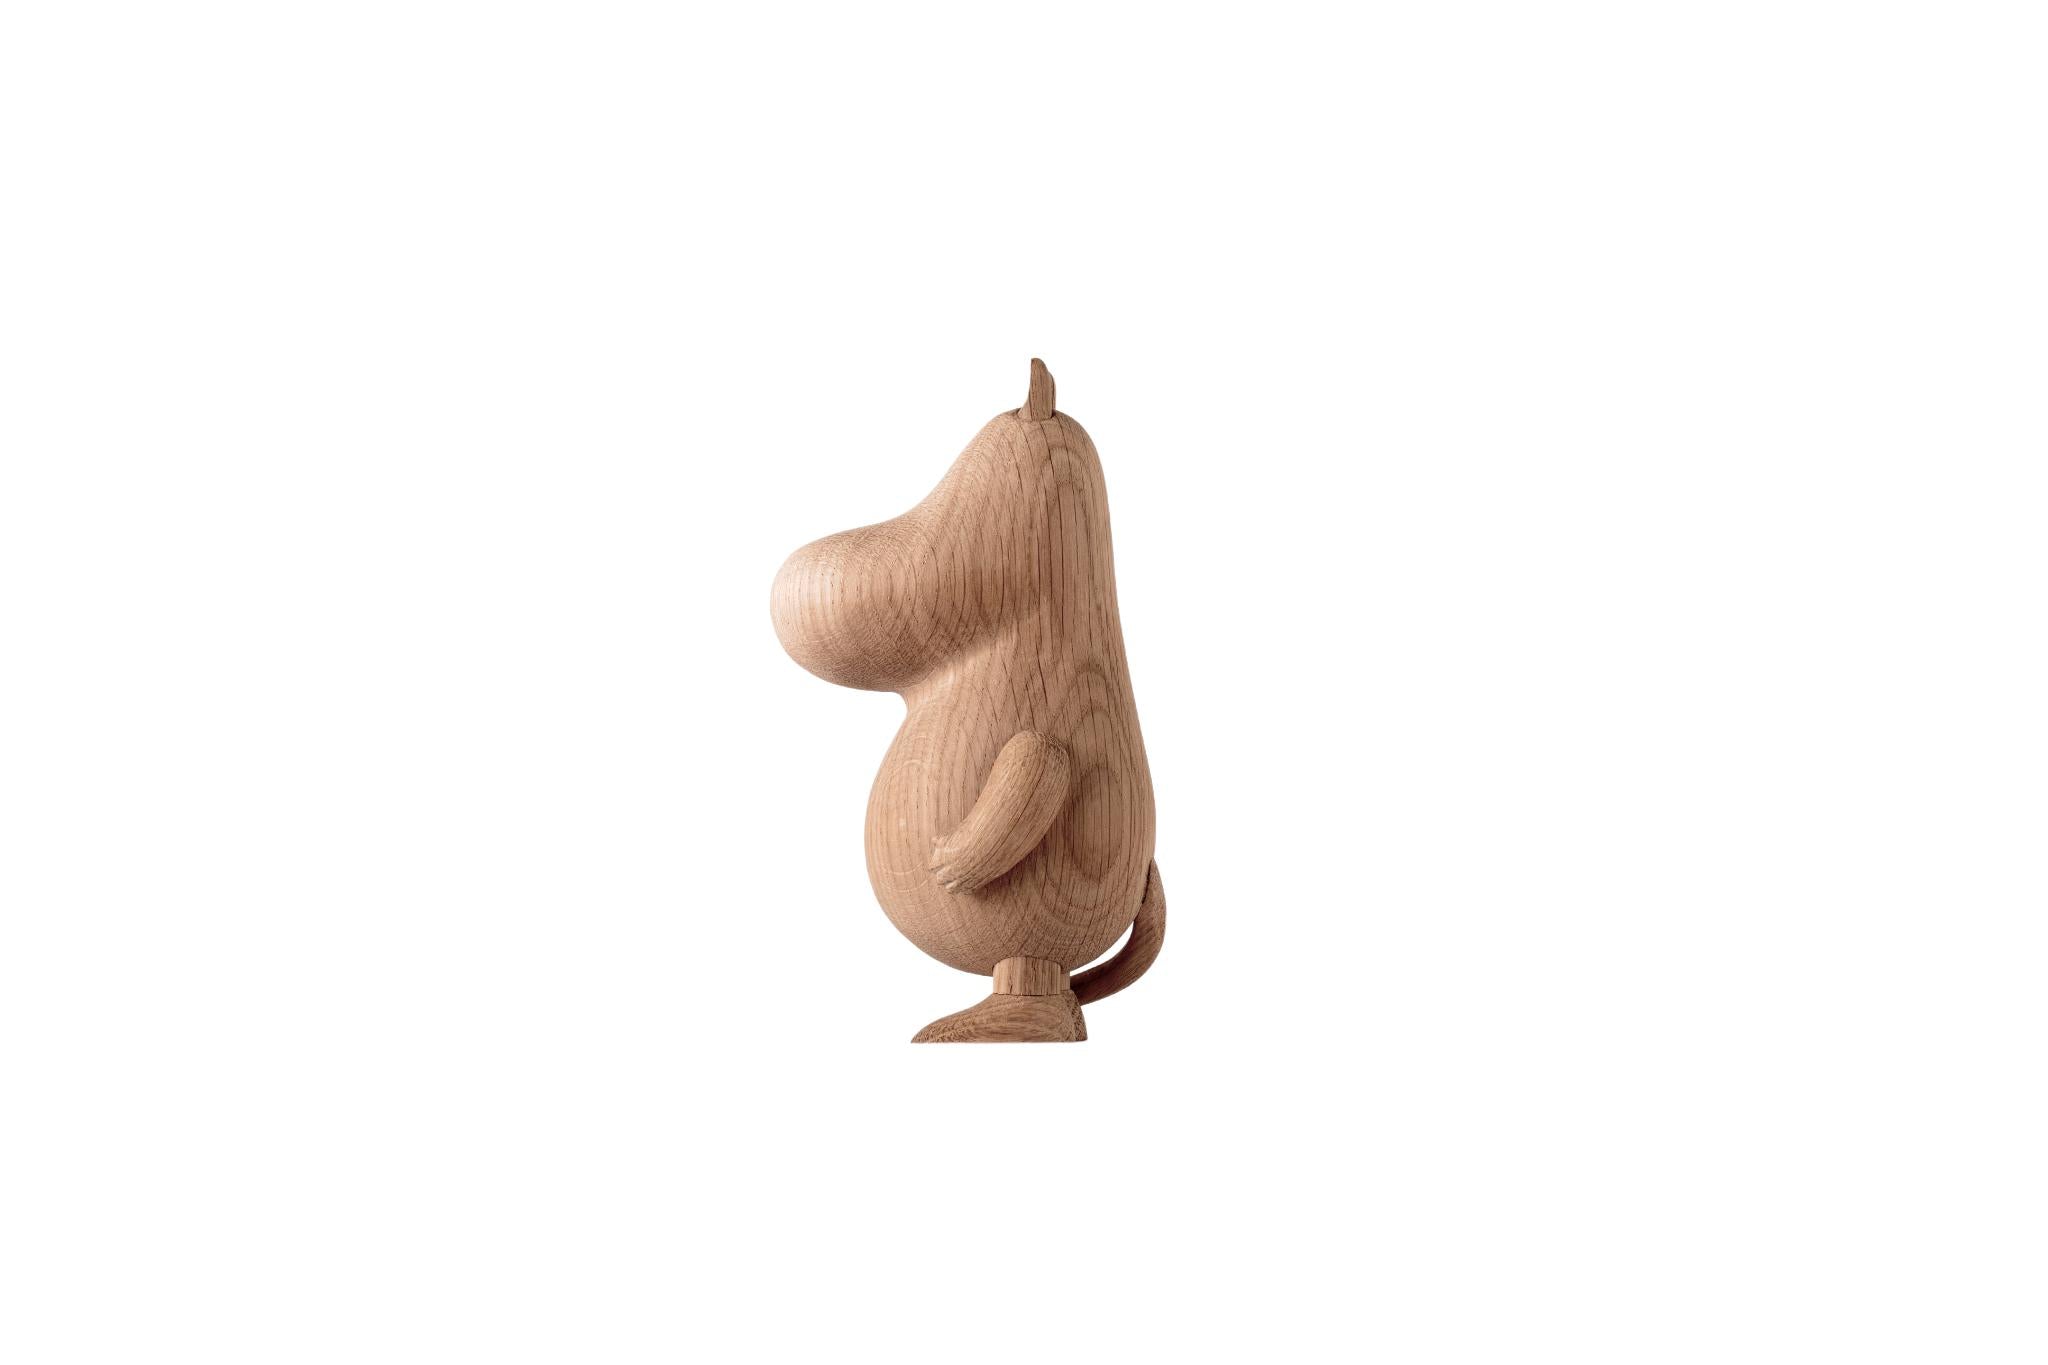 Boyhood Moomintroll træfigur eg, lille